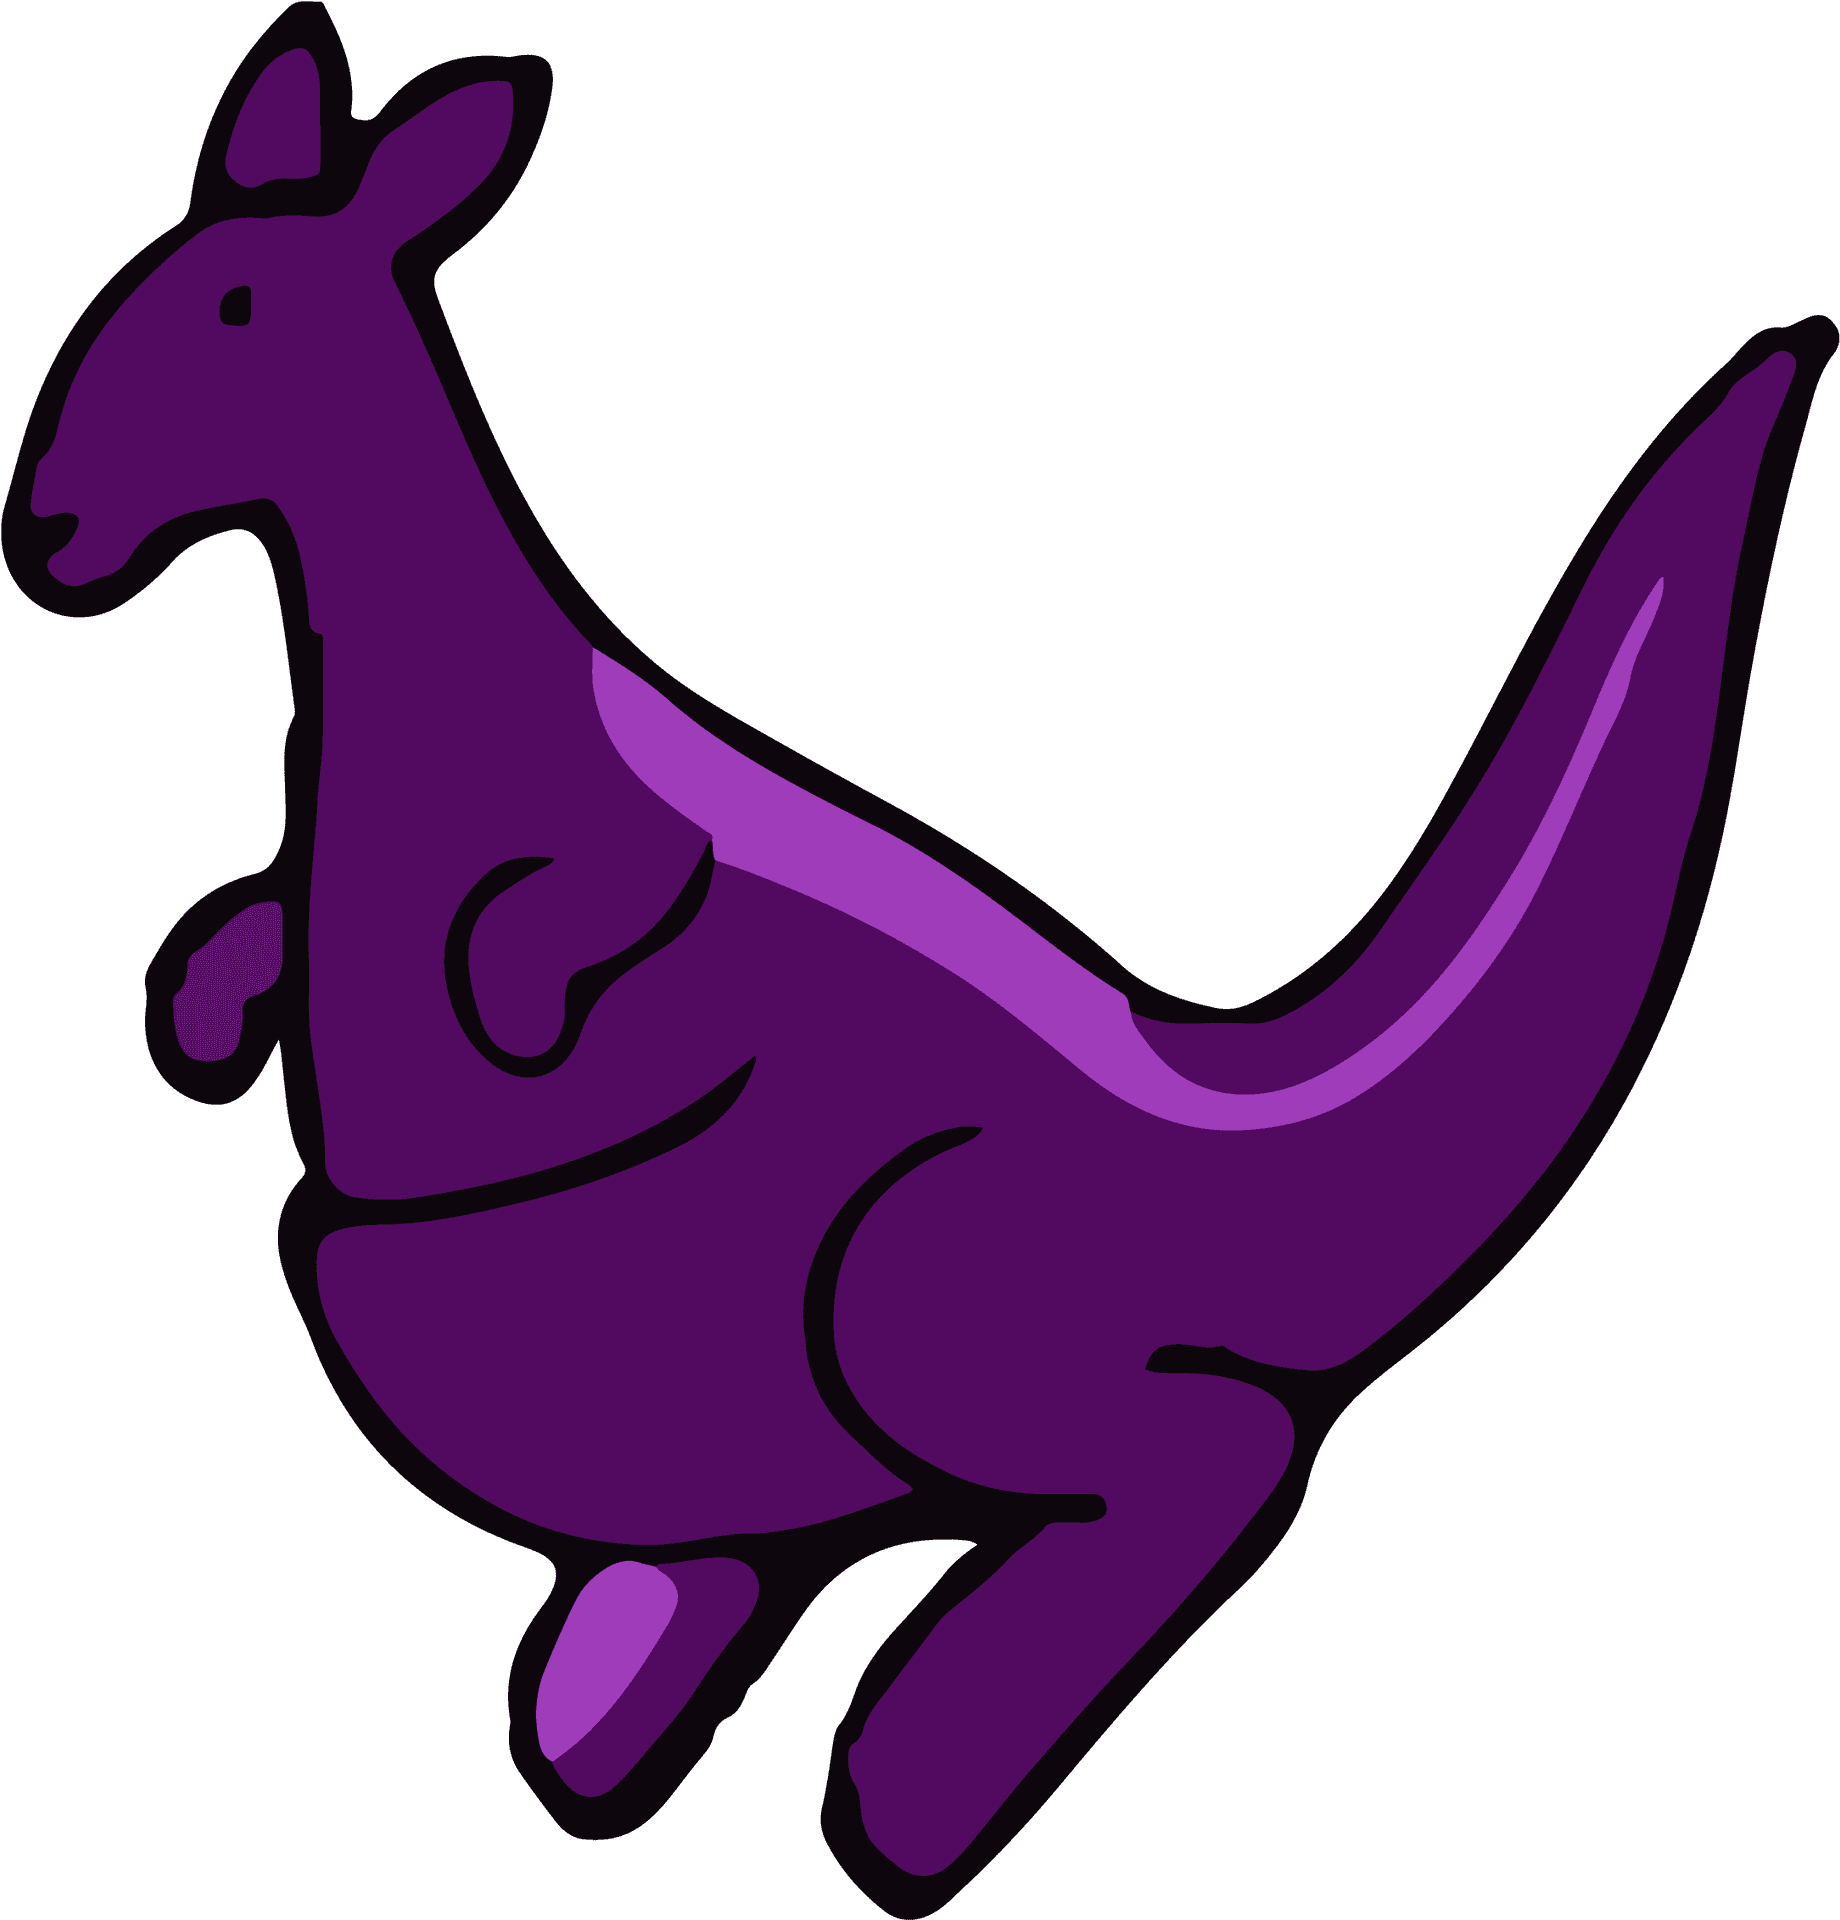 Purple Kangaroo Cartoon Illustration PNG image